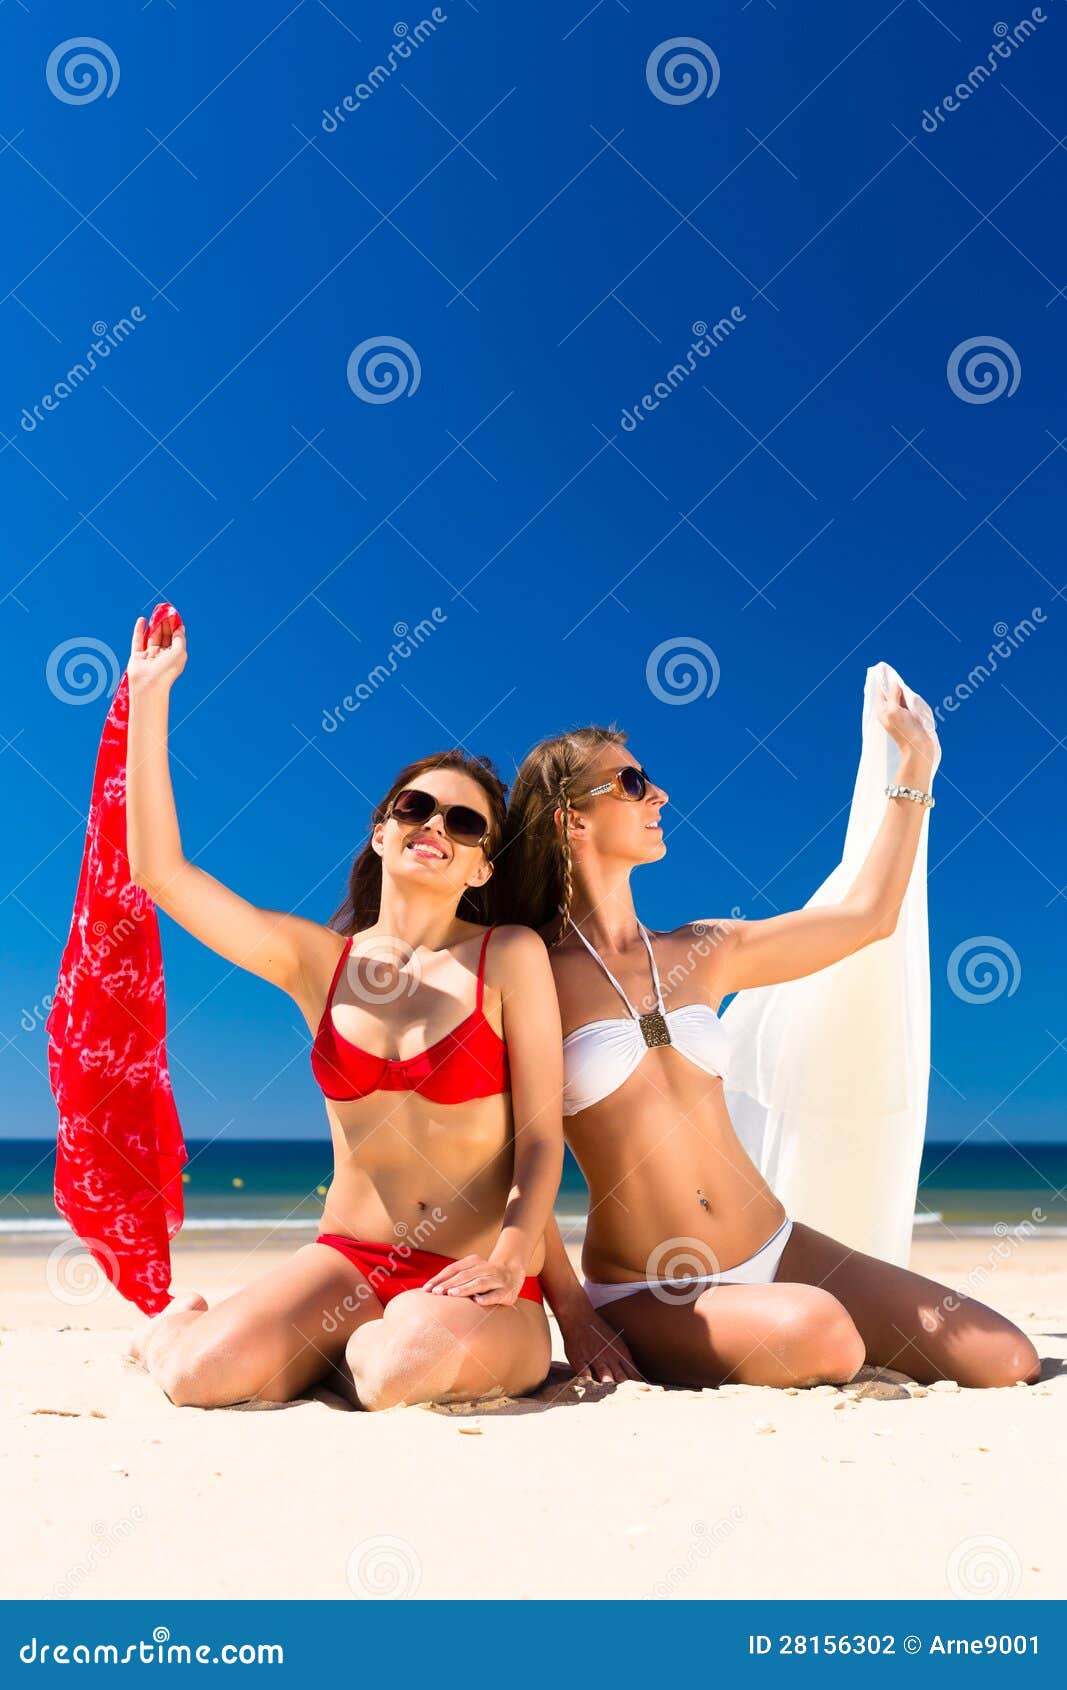 Girls Enjoying Freedom On The Beach Stock Photo - Image 